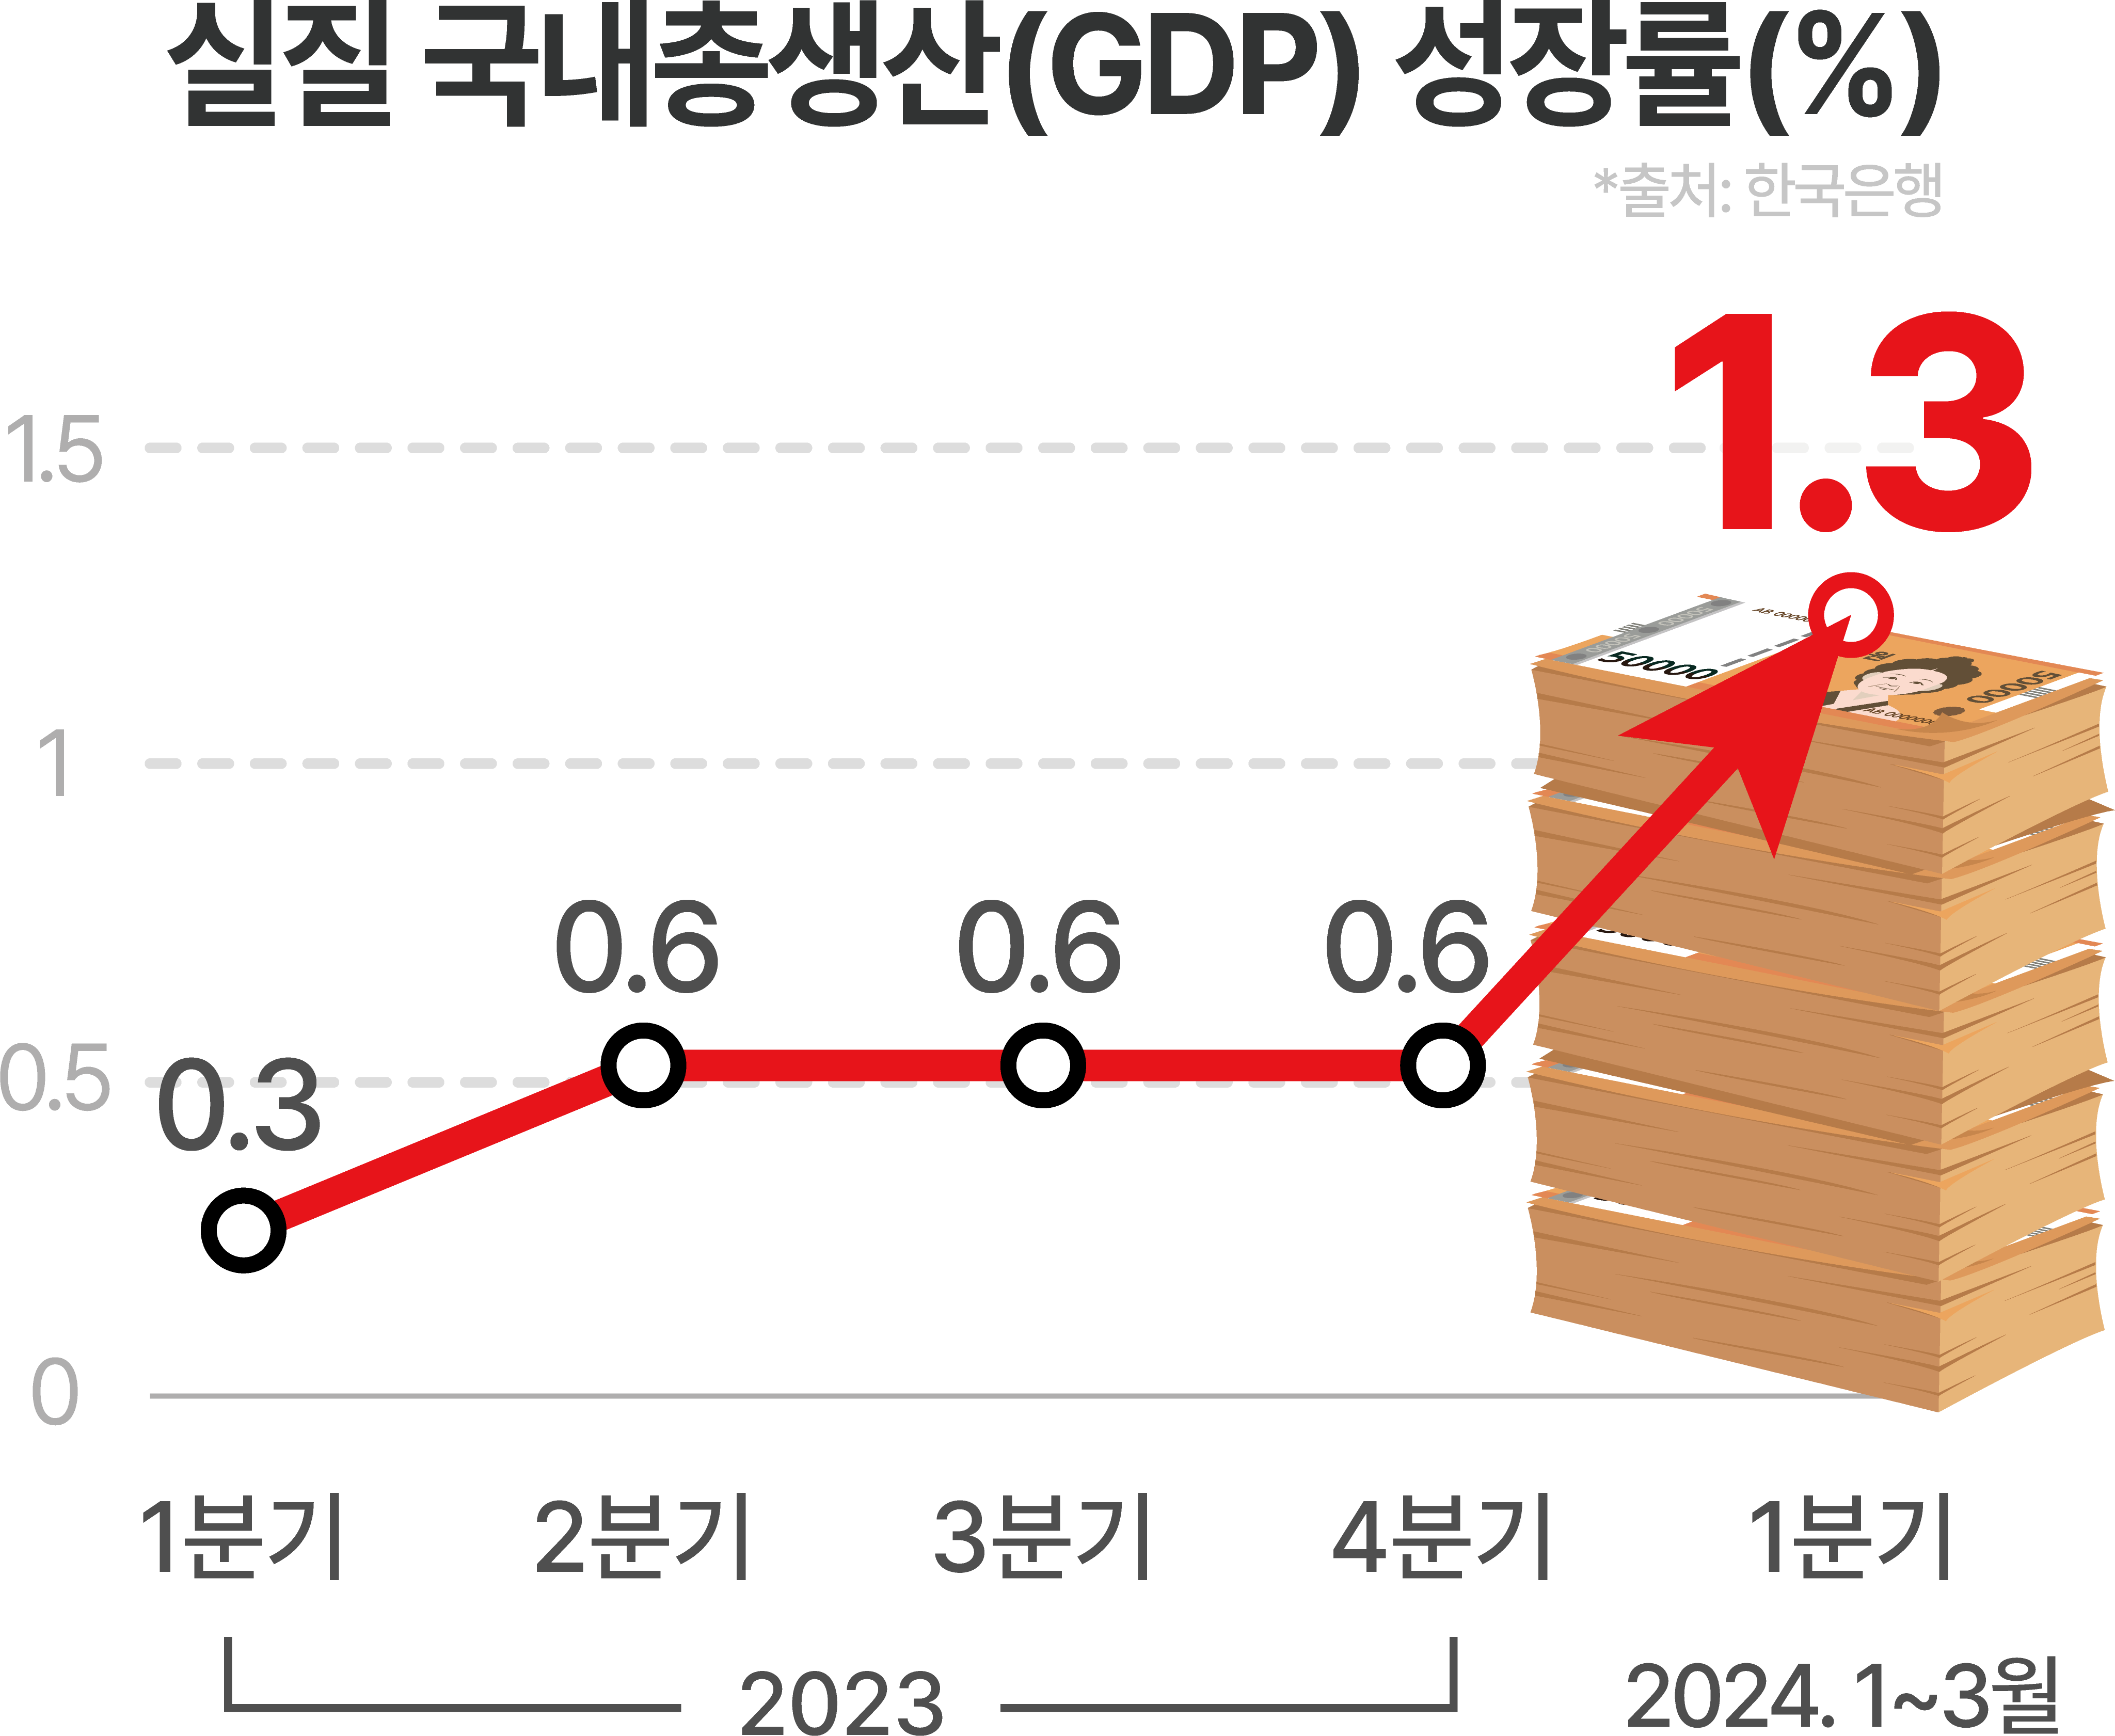 실질 국내총생산(GDP)성장률(%)출처한국은행 1분기 0.3 2분기 0.6 3분기 0.6 4분기 0.6 (2023) 2024 1-3분기 1.3%